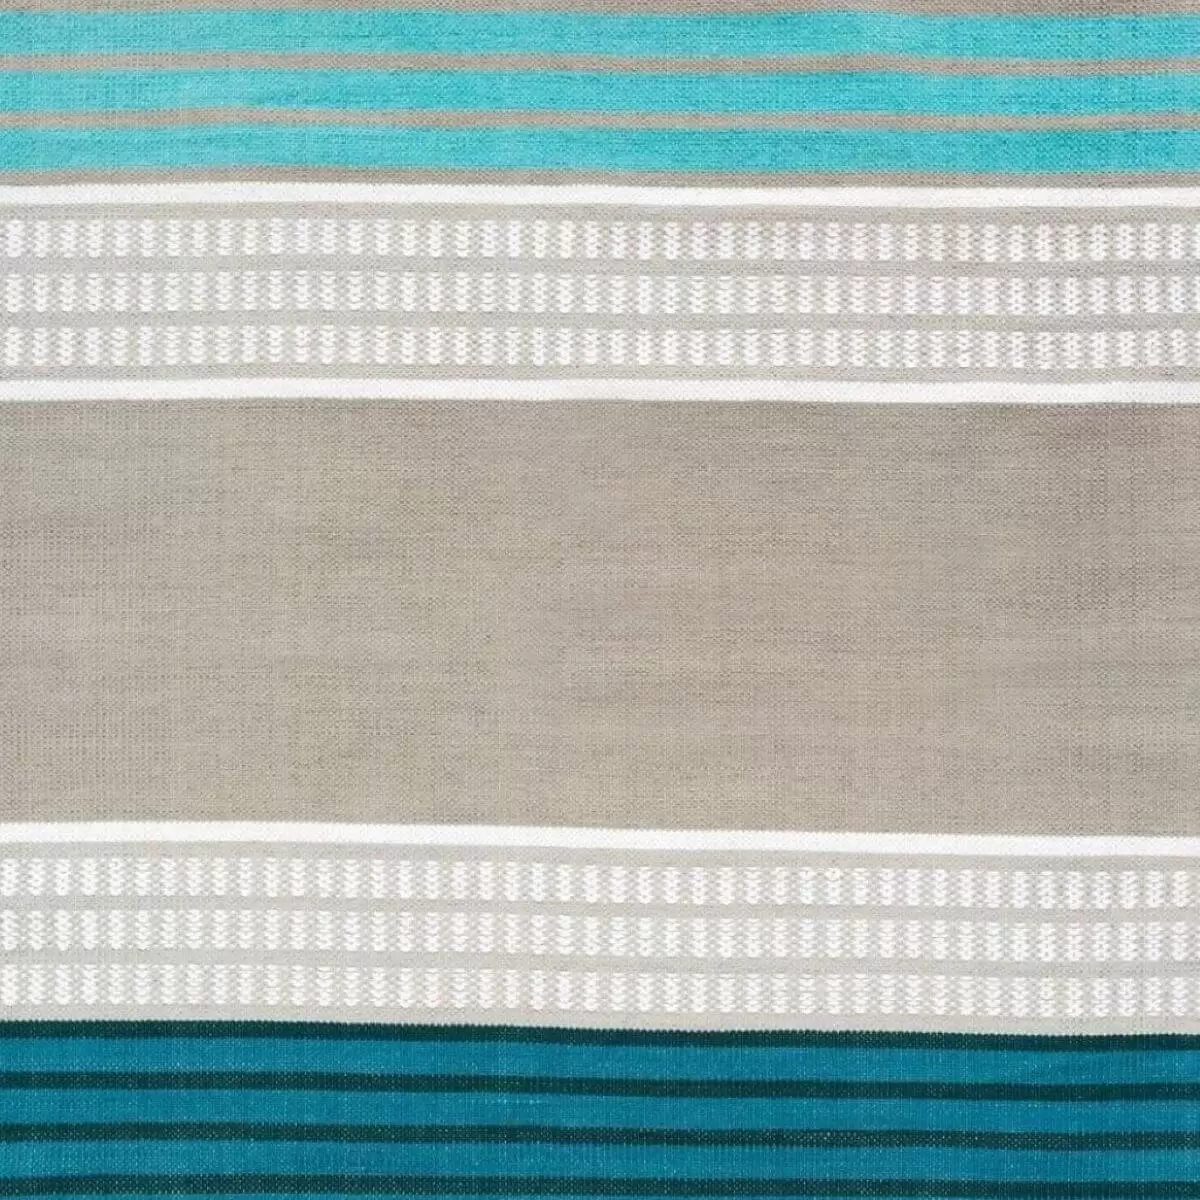 Dywan skandynawski turkusowy 80x150 PALLAS. Geometryczny wzór w szaro turkusowe pasy i paski dywanu z bawełny do nowoczesnej sypialni styl skandynawski w zbliżeniu